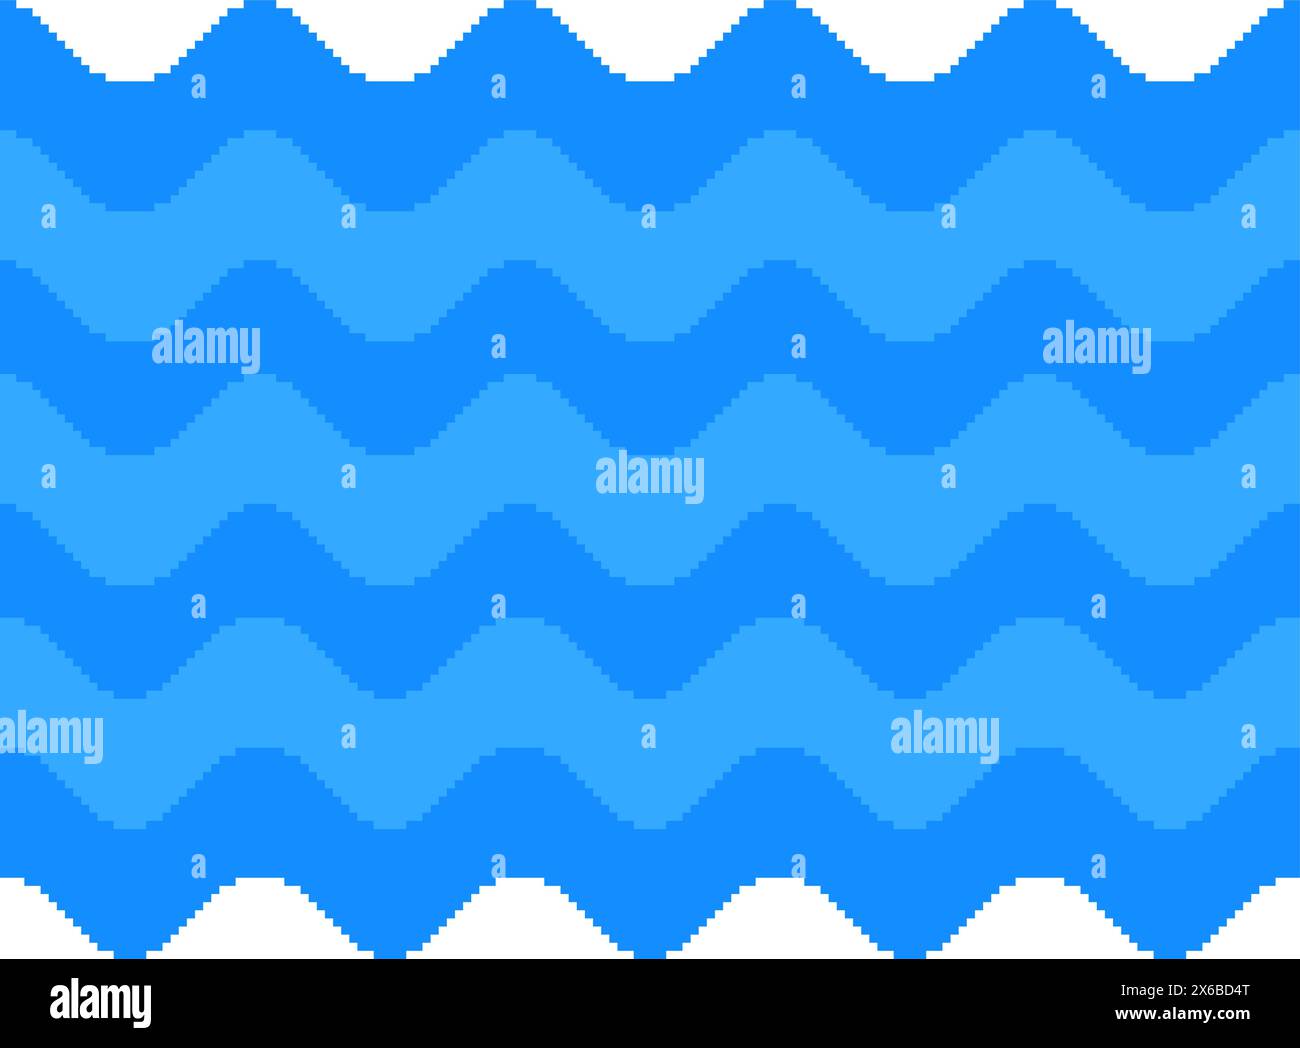 Sea Waves Pixel Art - Asset für das Spiel. Nahtlose Textur der ozeanischen Oberfläche. 2D-Kachelmuster Vektorillustration Stock Vektor